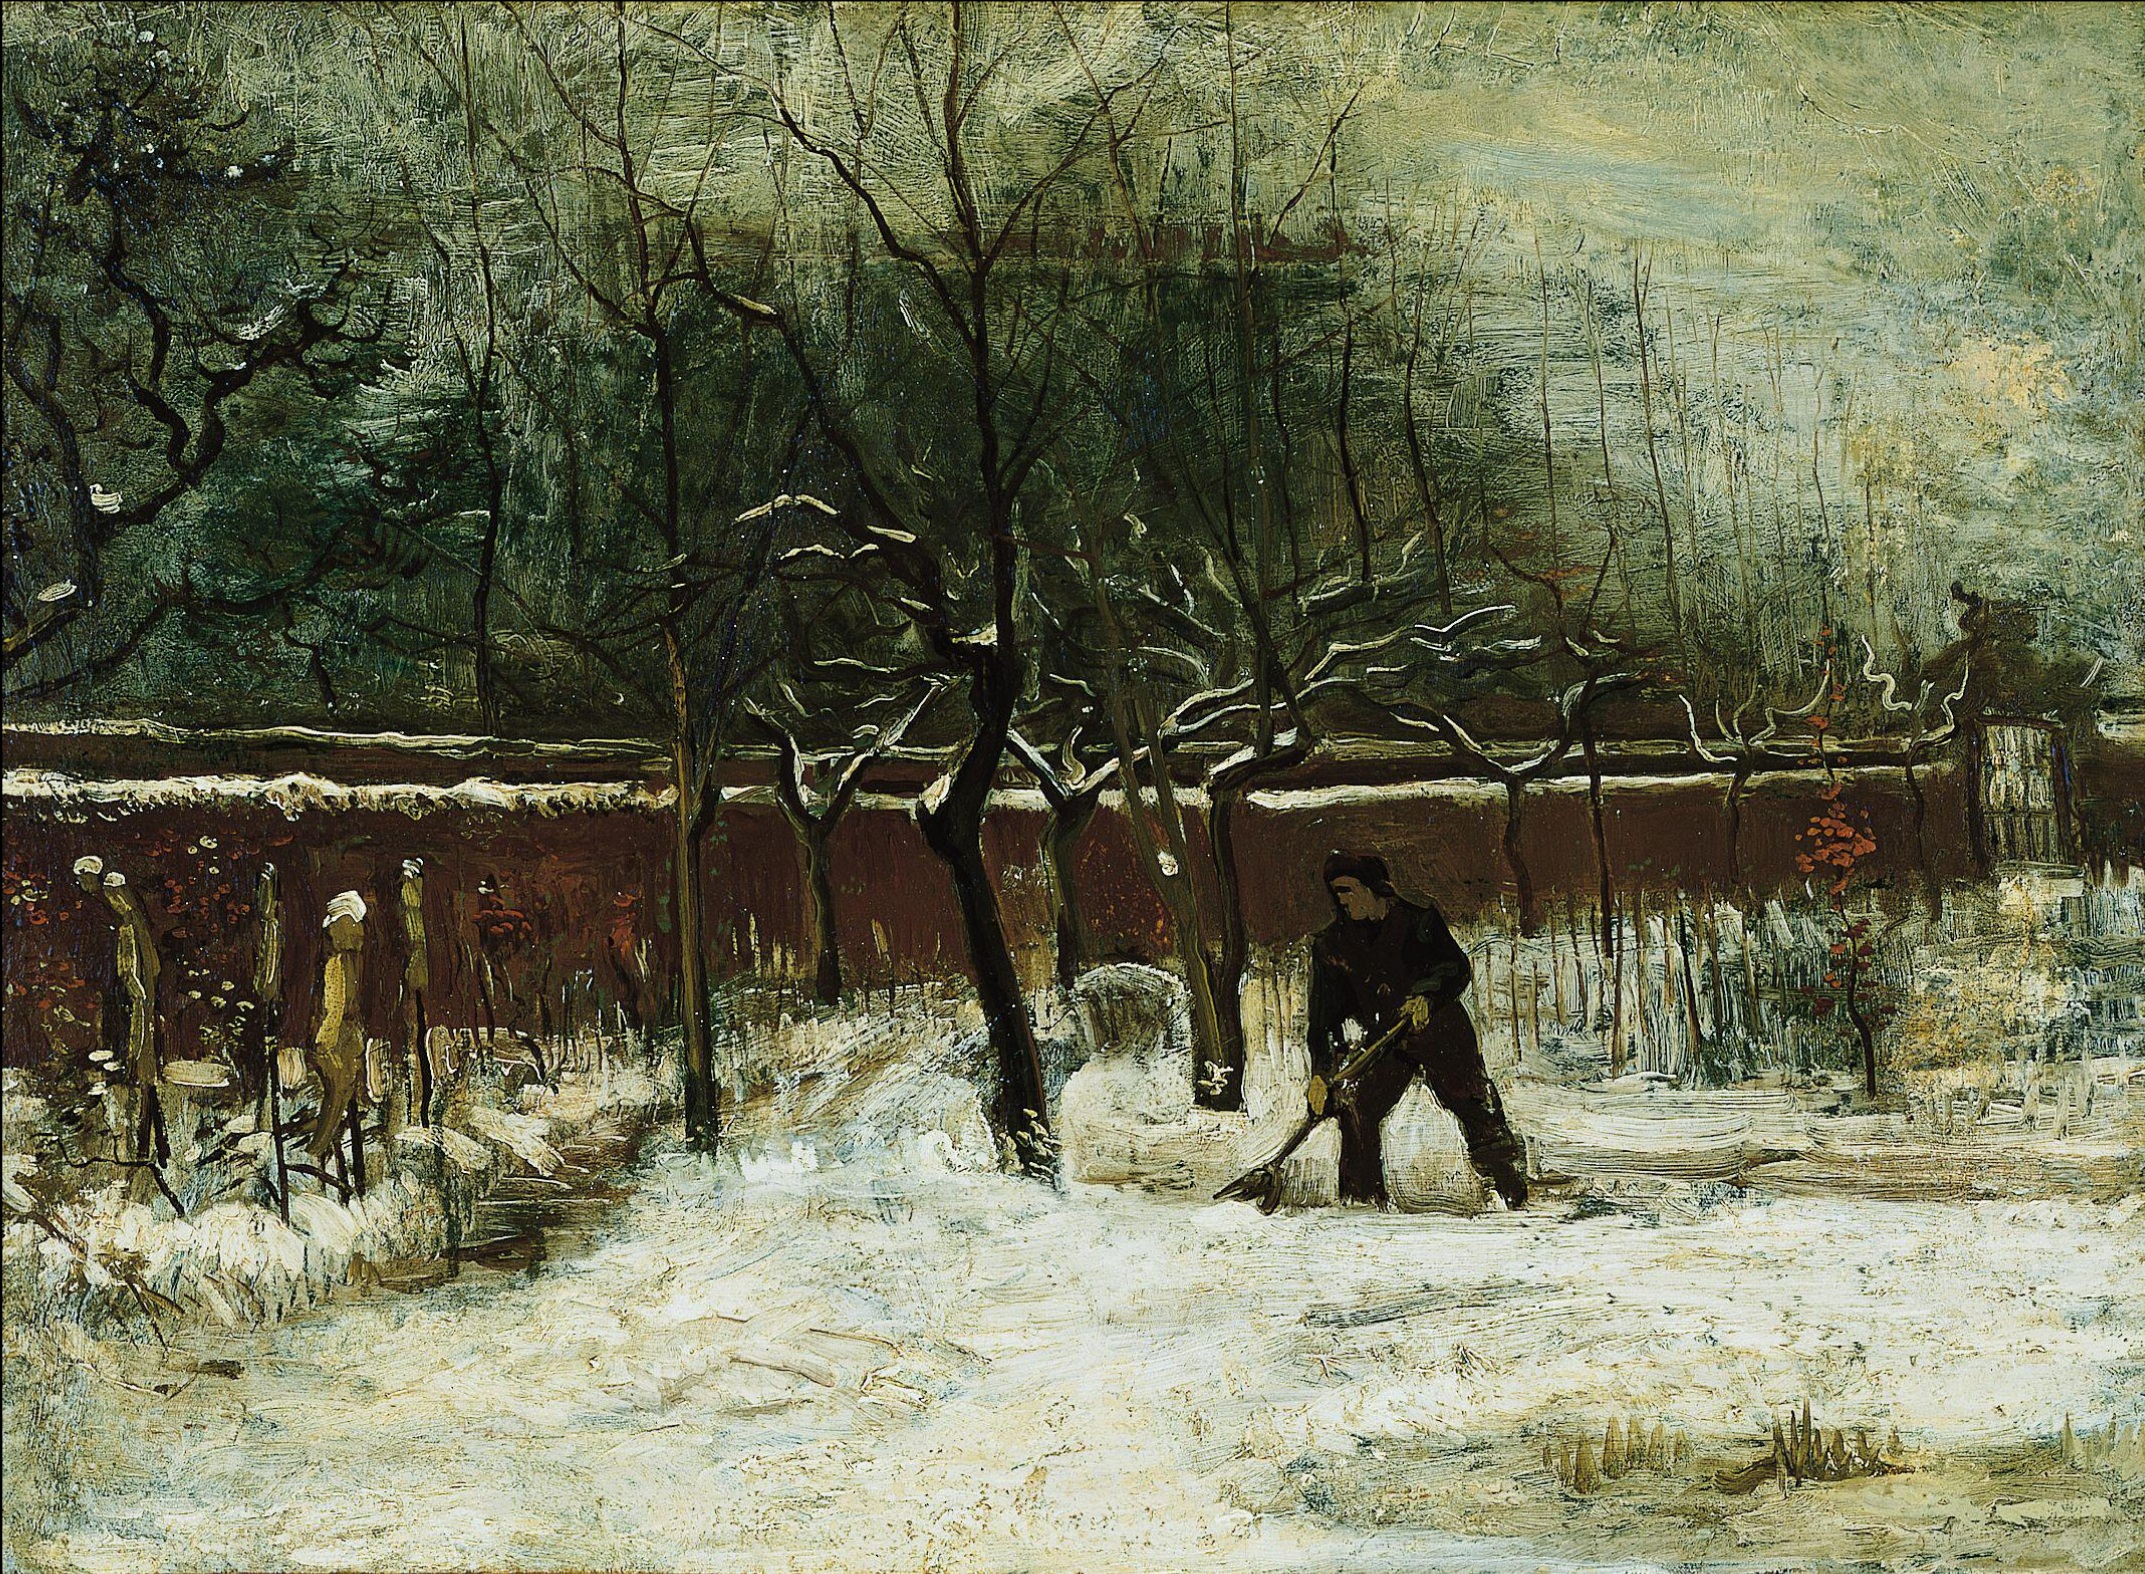 冬季 by Vincent van Gogh - 1885 年1月 - 58.4 x 79.1 cm 